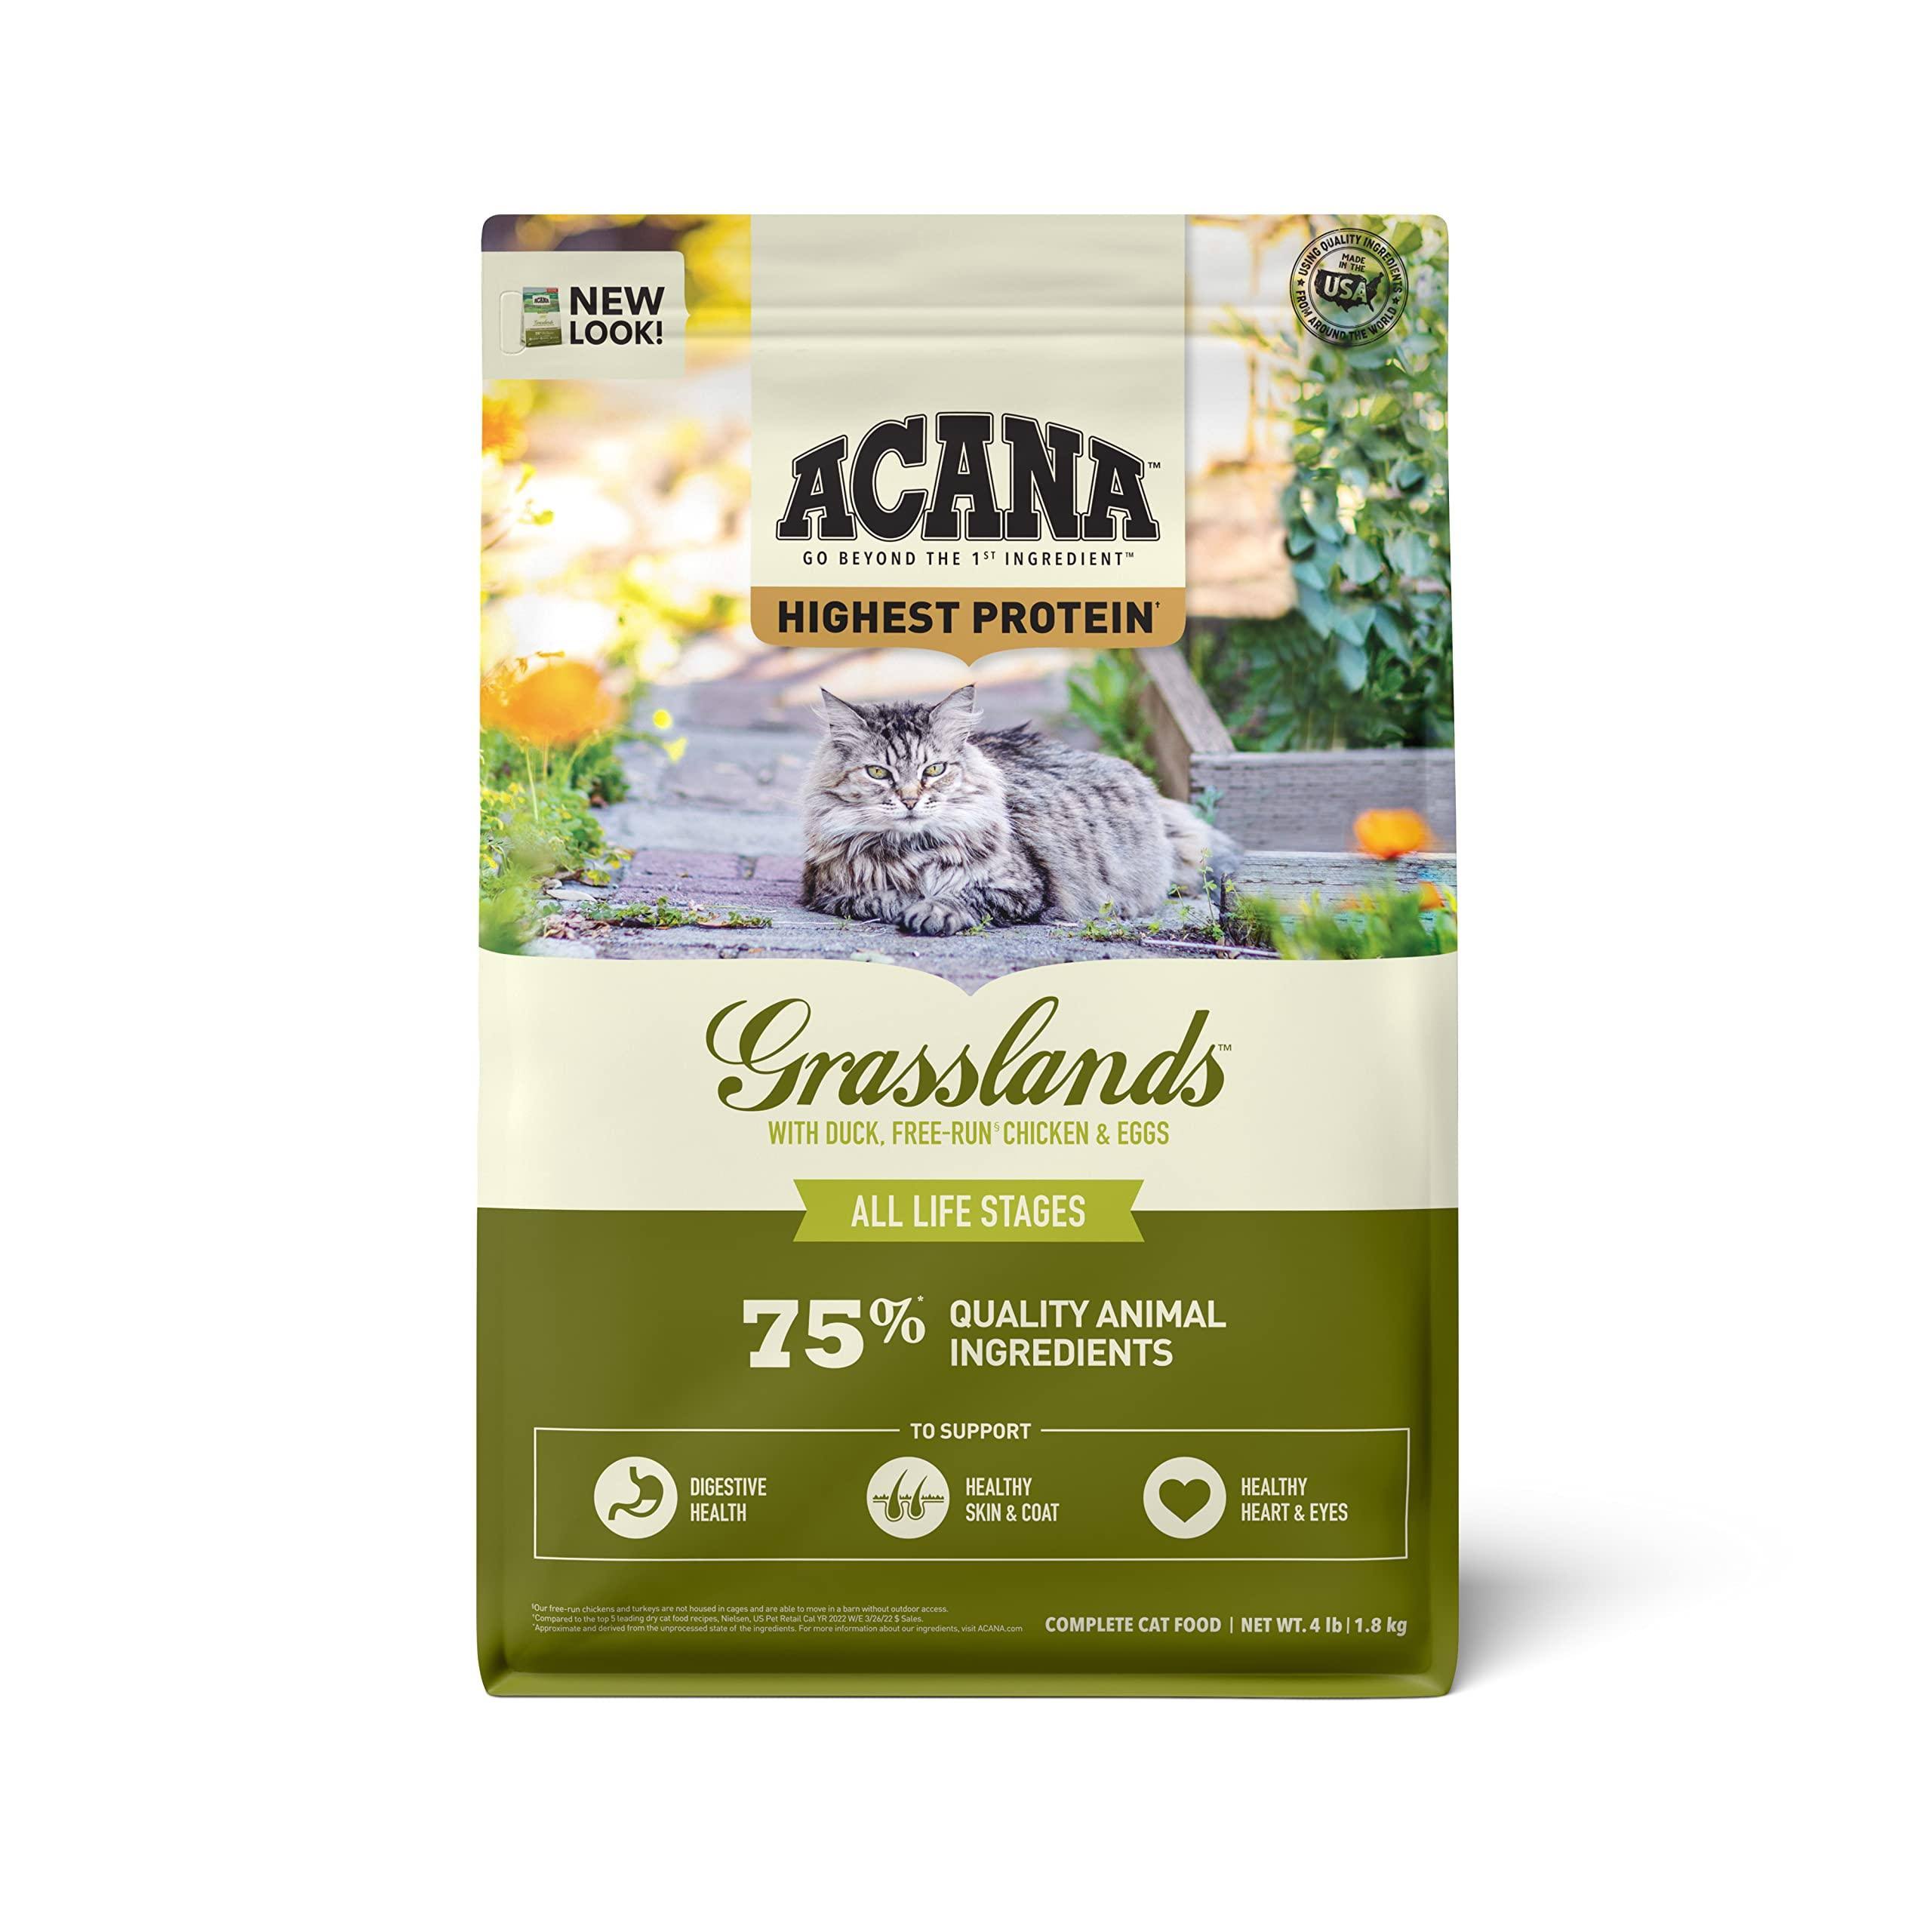 Acana Grasslands Grain-Free Dry Cat Food 4 LB